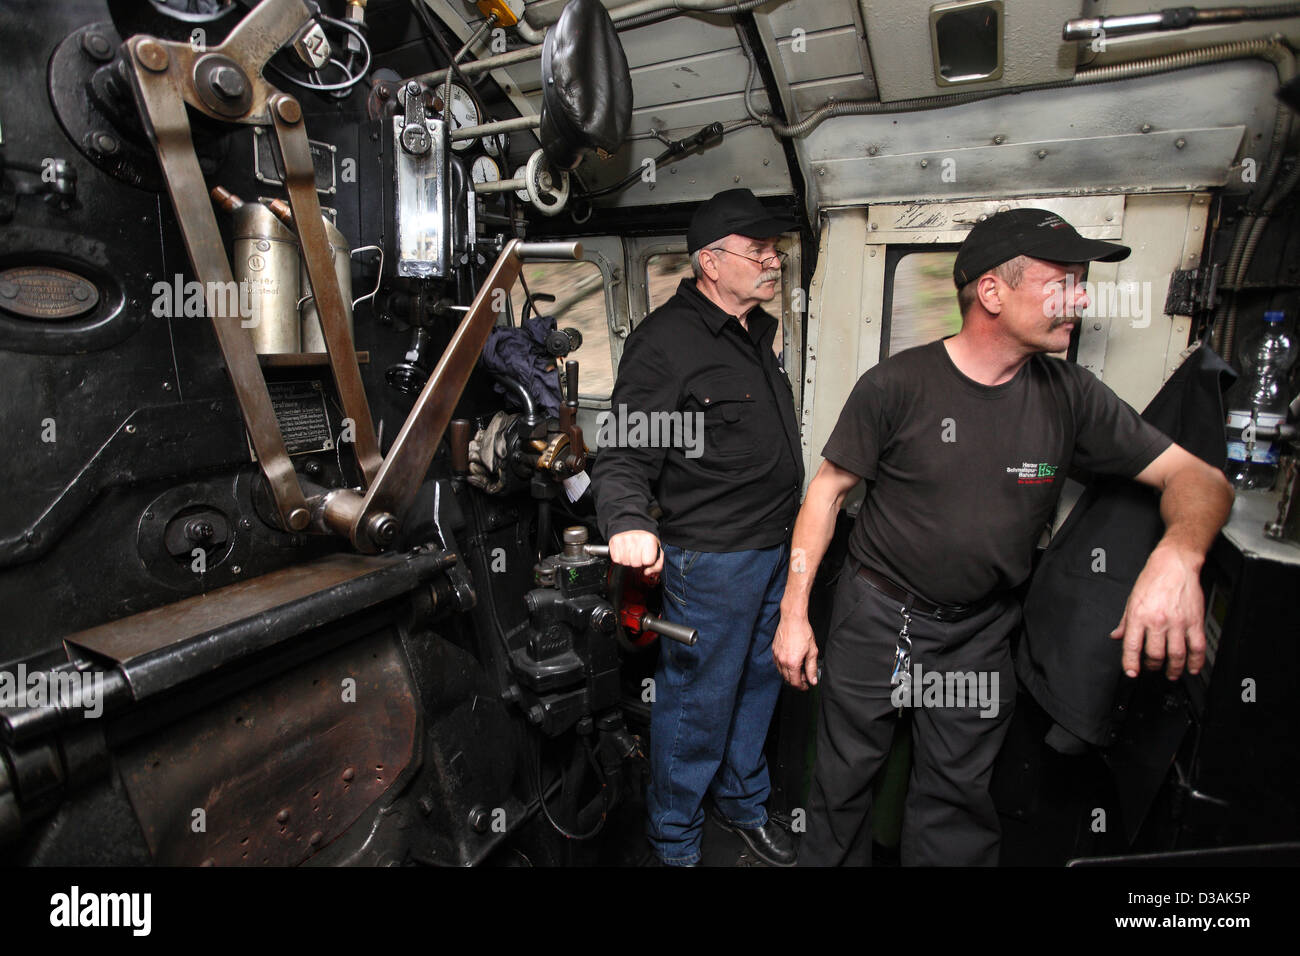 Drei Annen Hohne, Allemagne, Bernd Weber chef de section dans un train à vapeur historique Banque D'Images